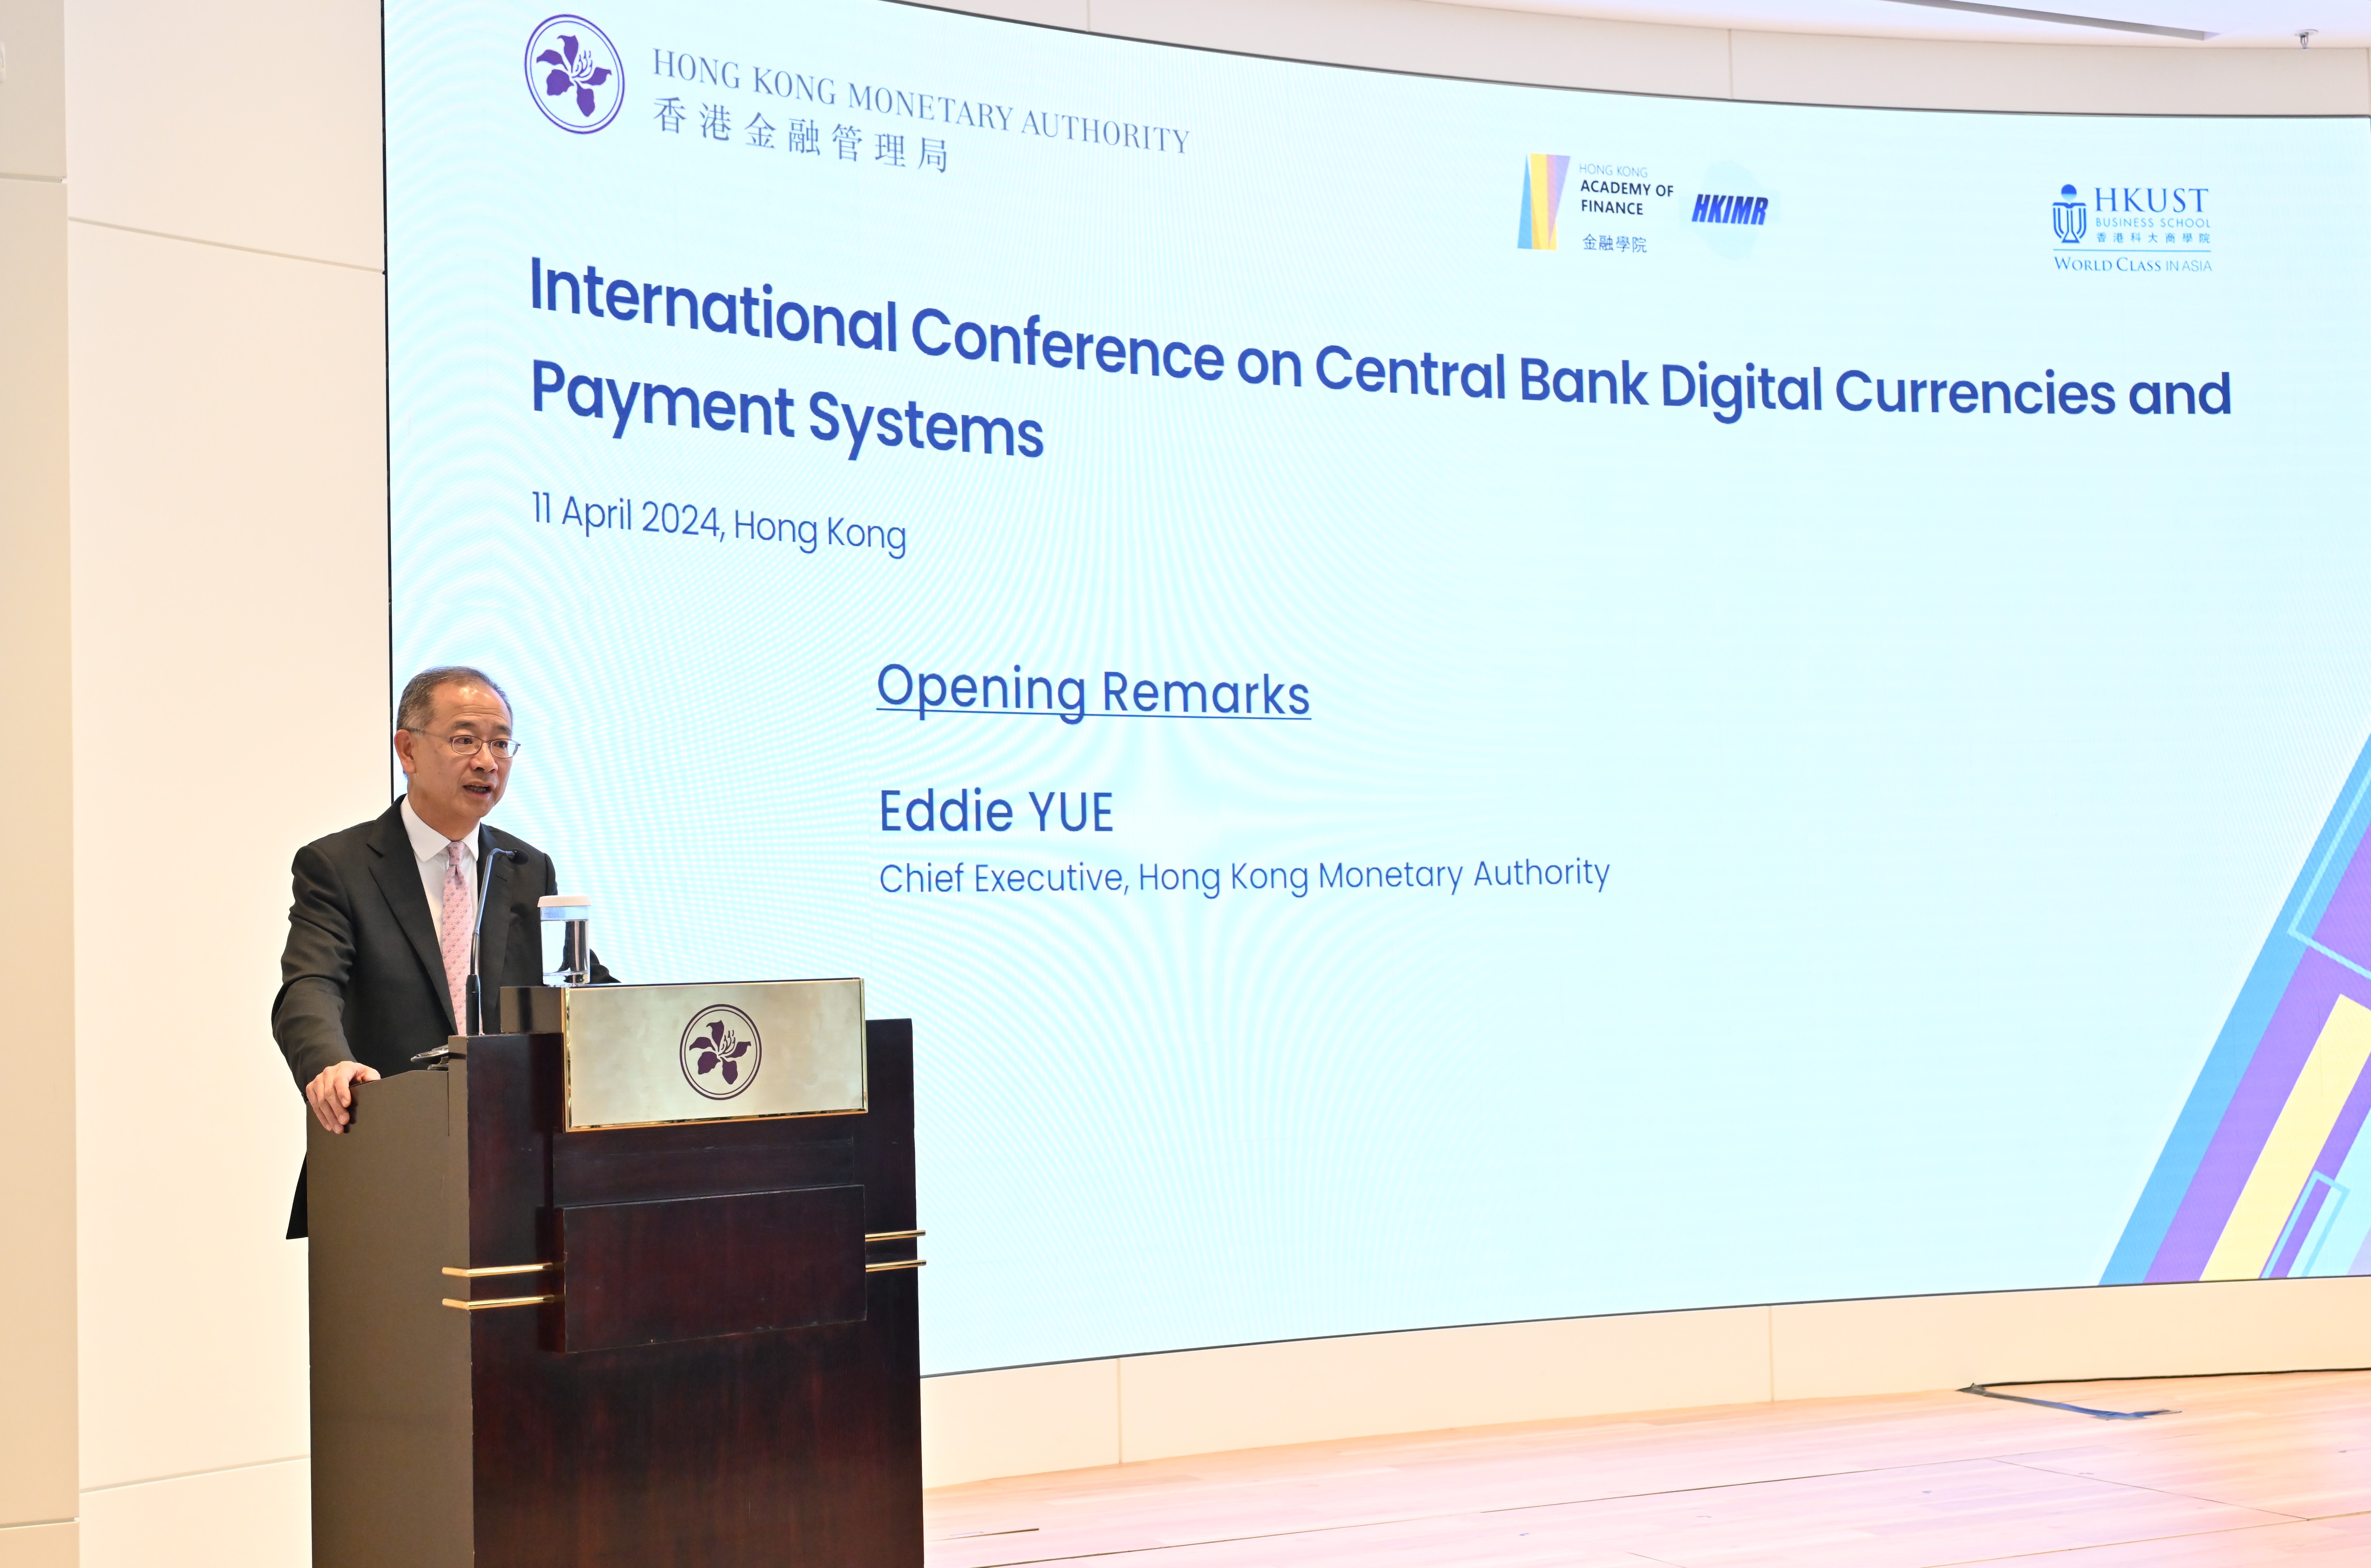 金管局总裁余伟文先生于会上致主题演讲，会议汇聚国际货币机构、以及亚洲、欧洲及北美洲地区的中央银行及学界专家。